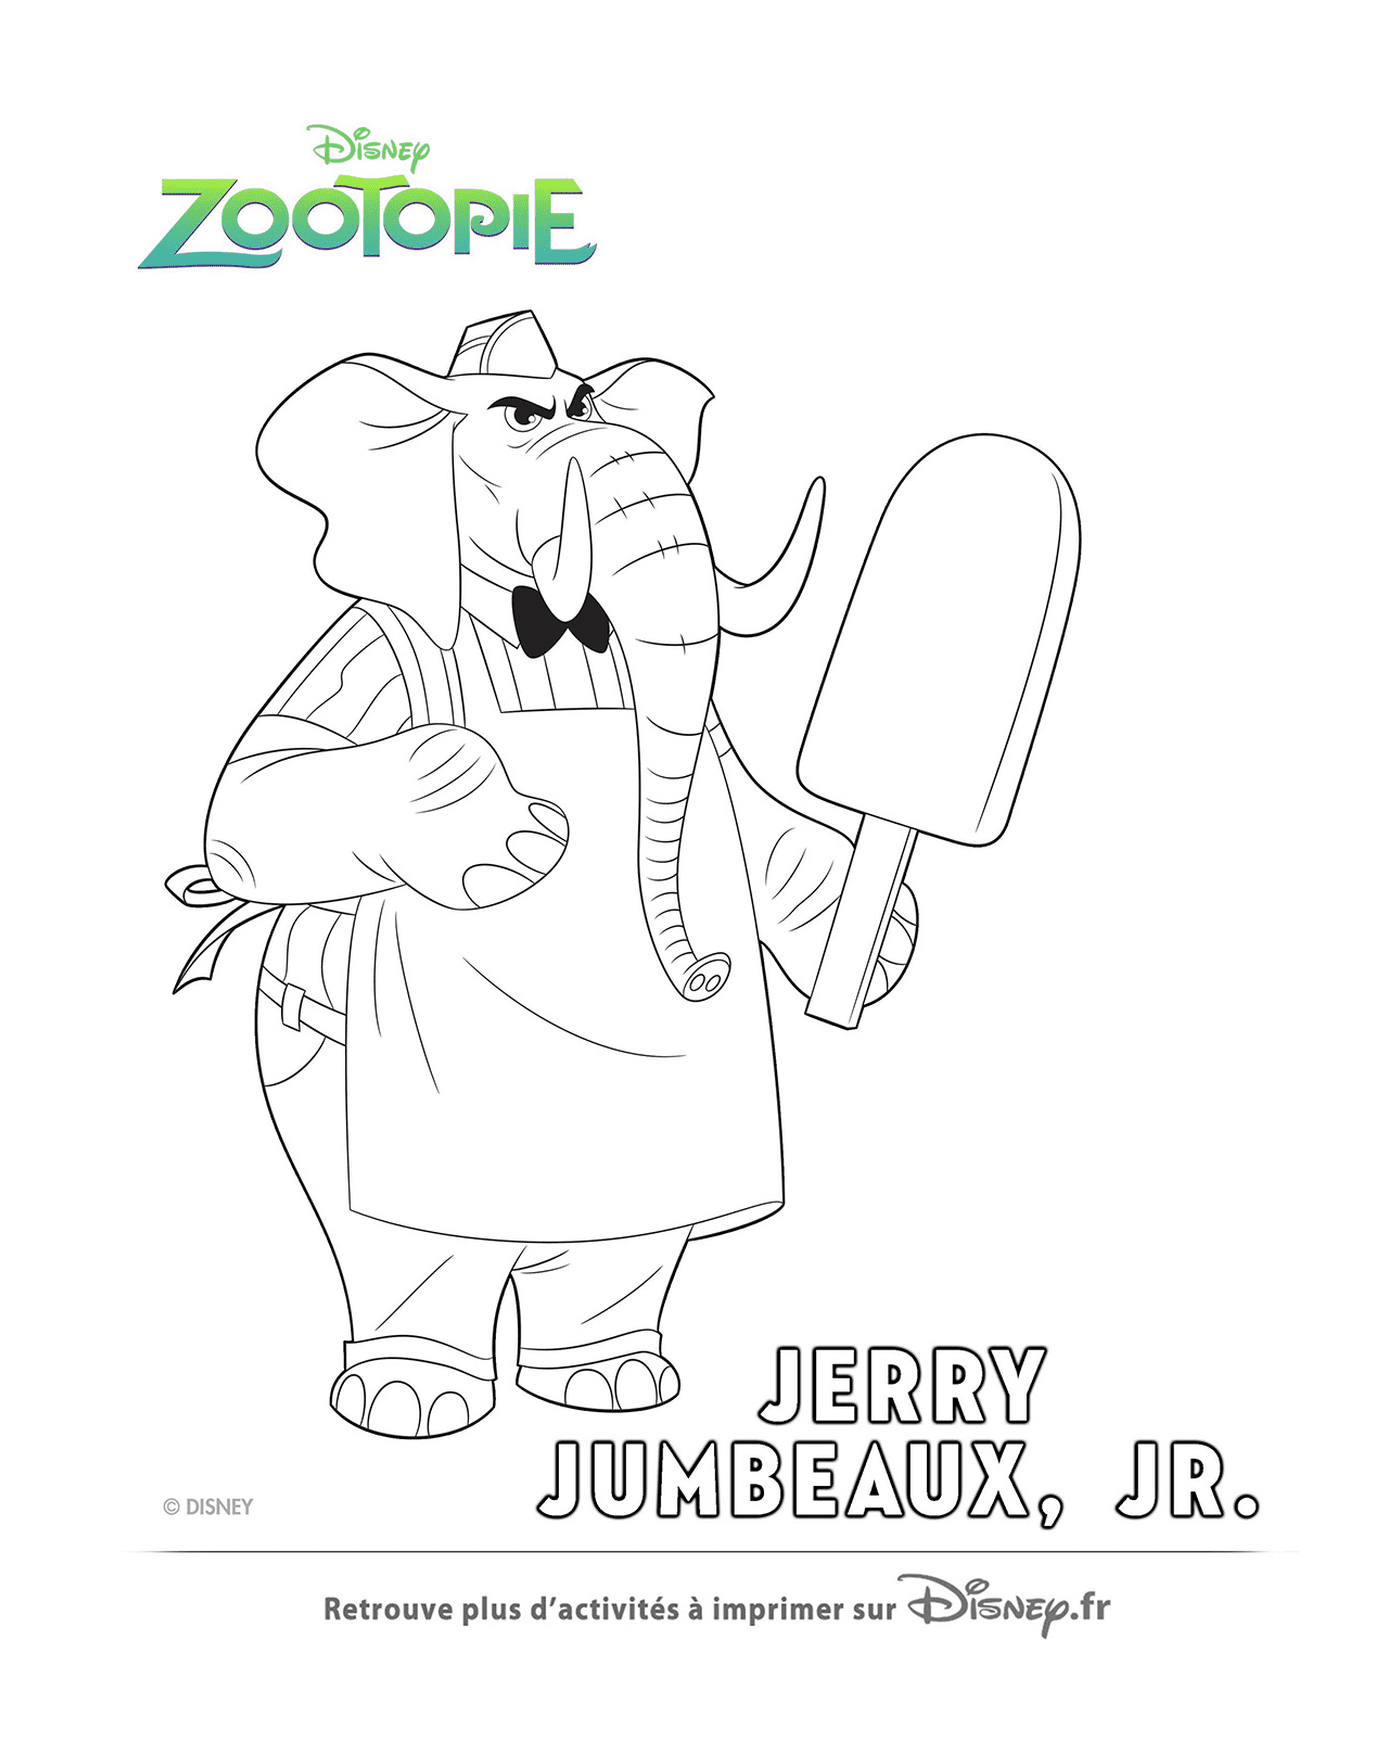  Jerry, el vendedor de helados de Zootopie 